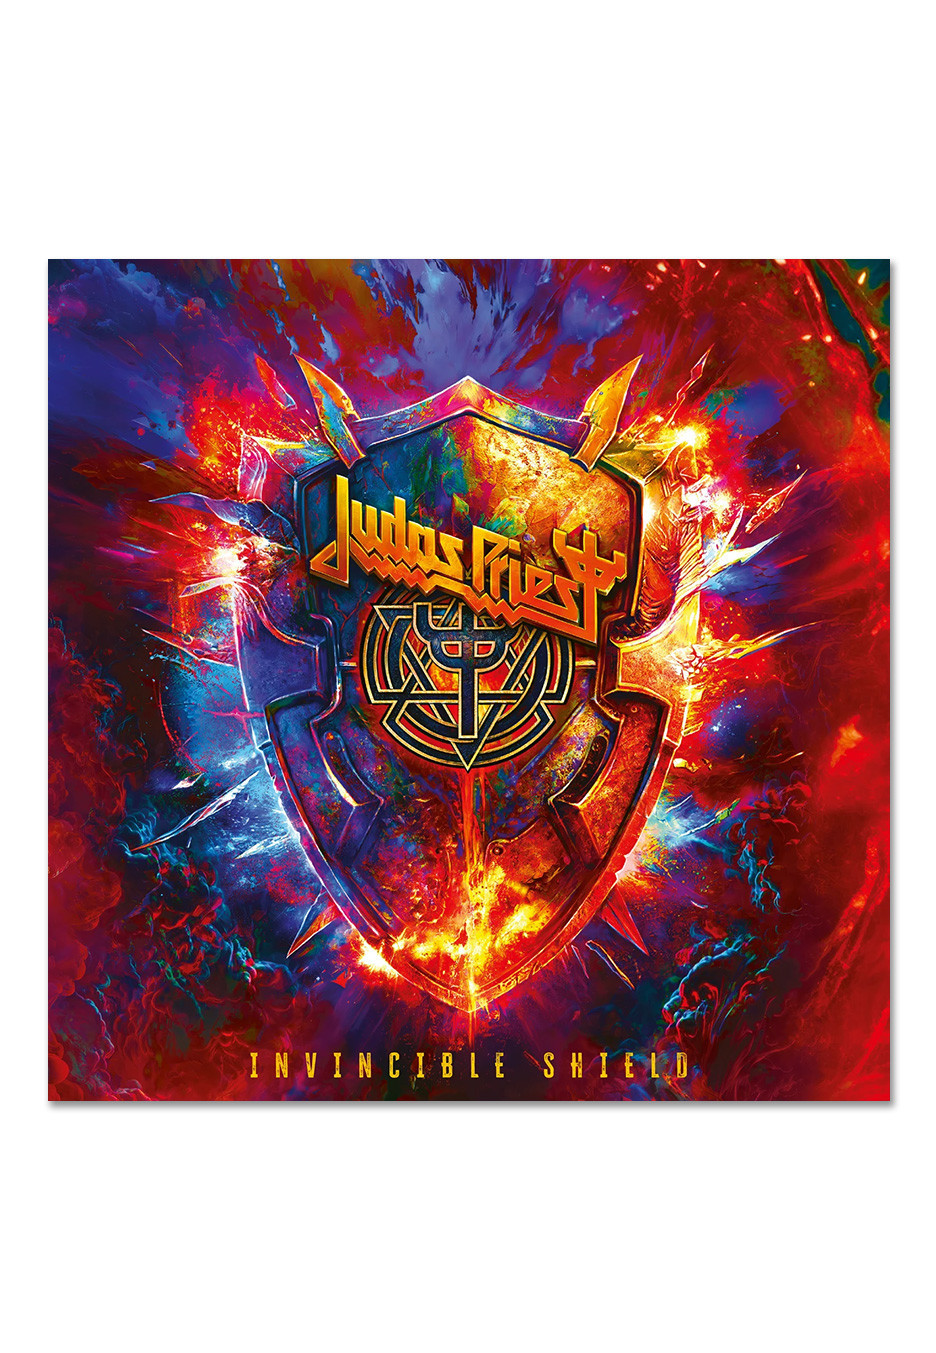 Judas Priest - Invincible Shield - Vinyl